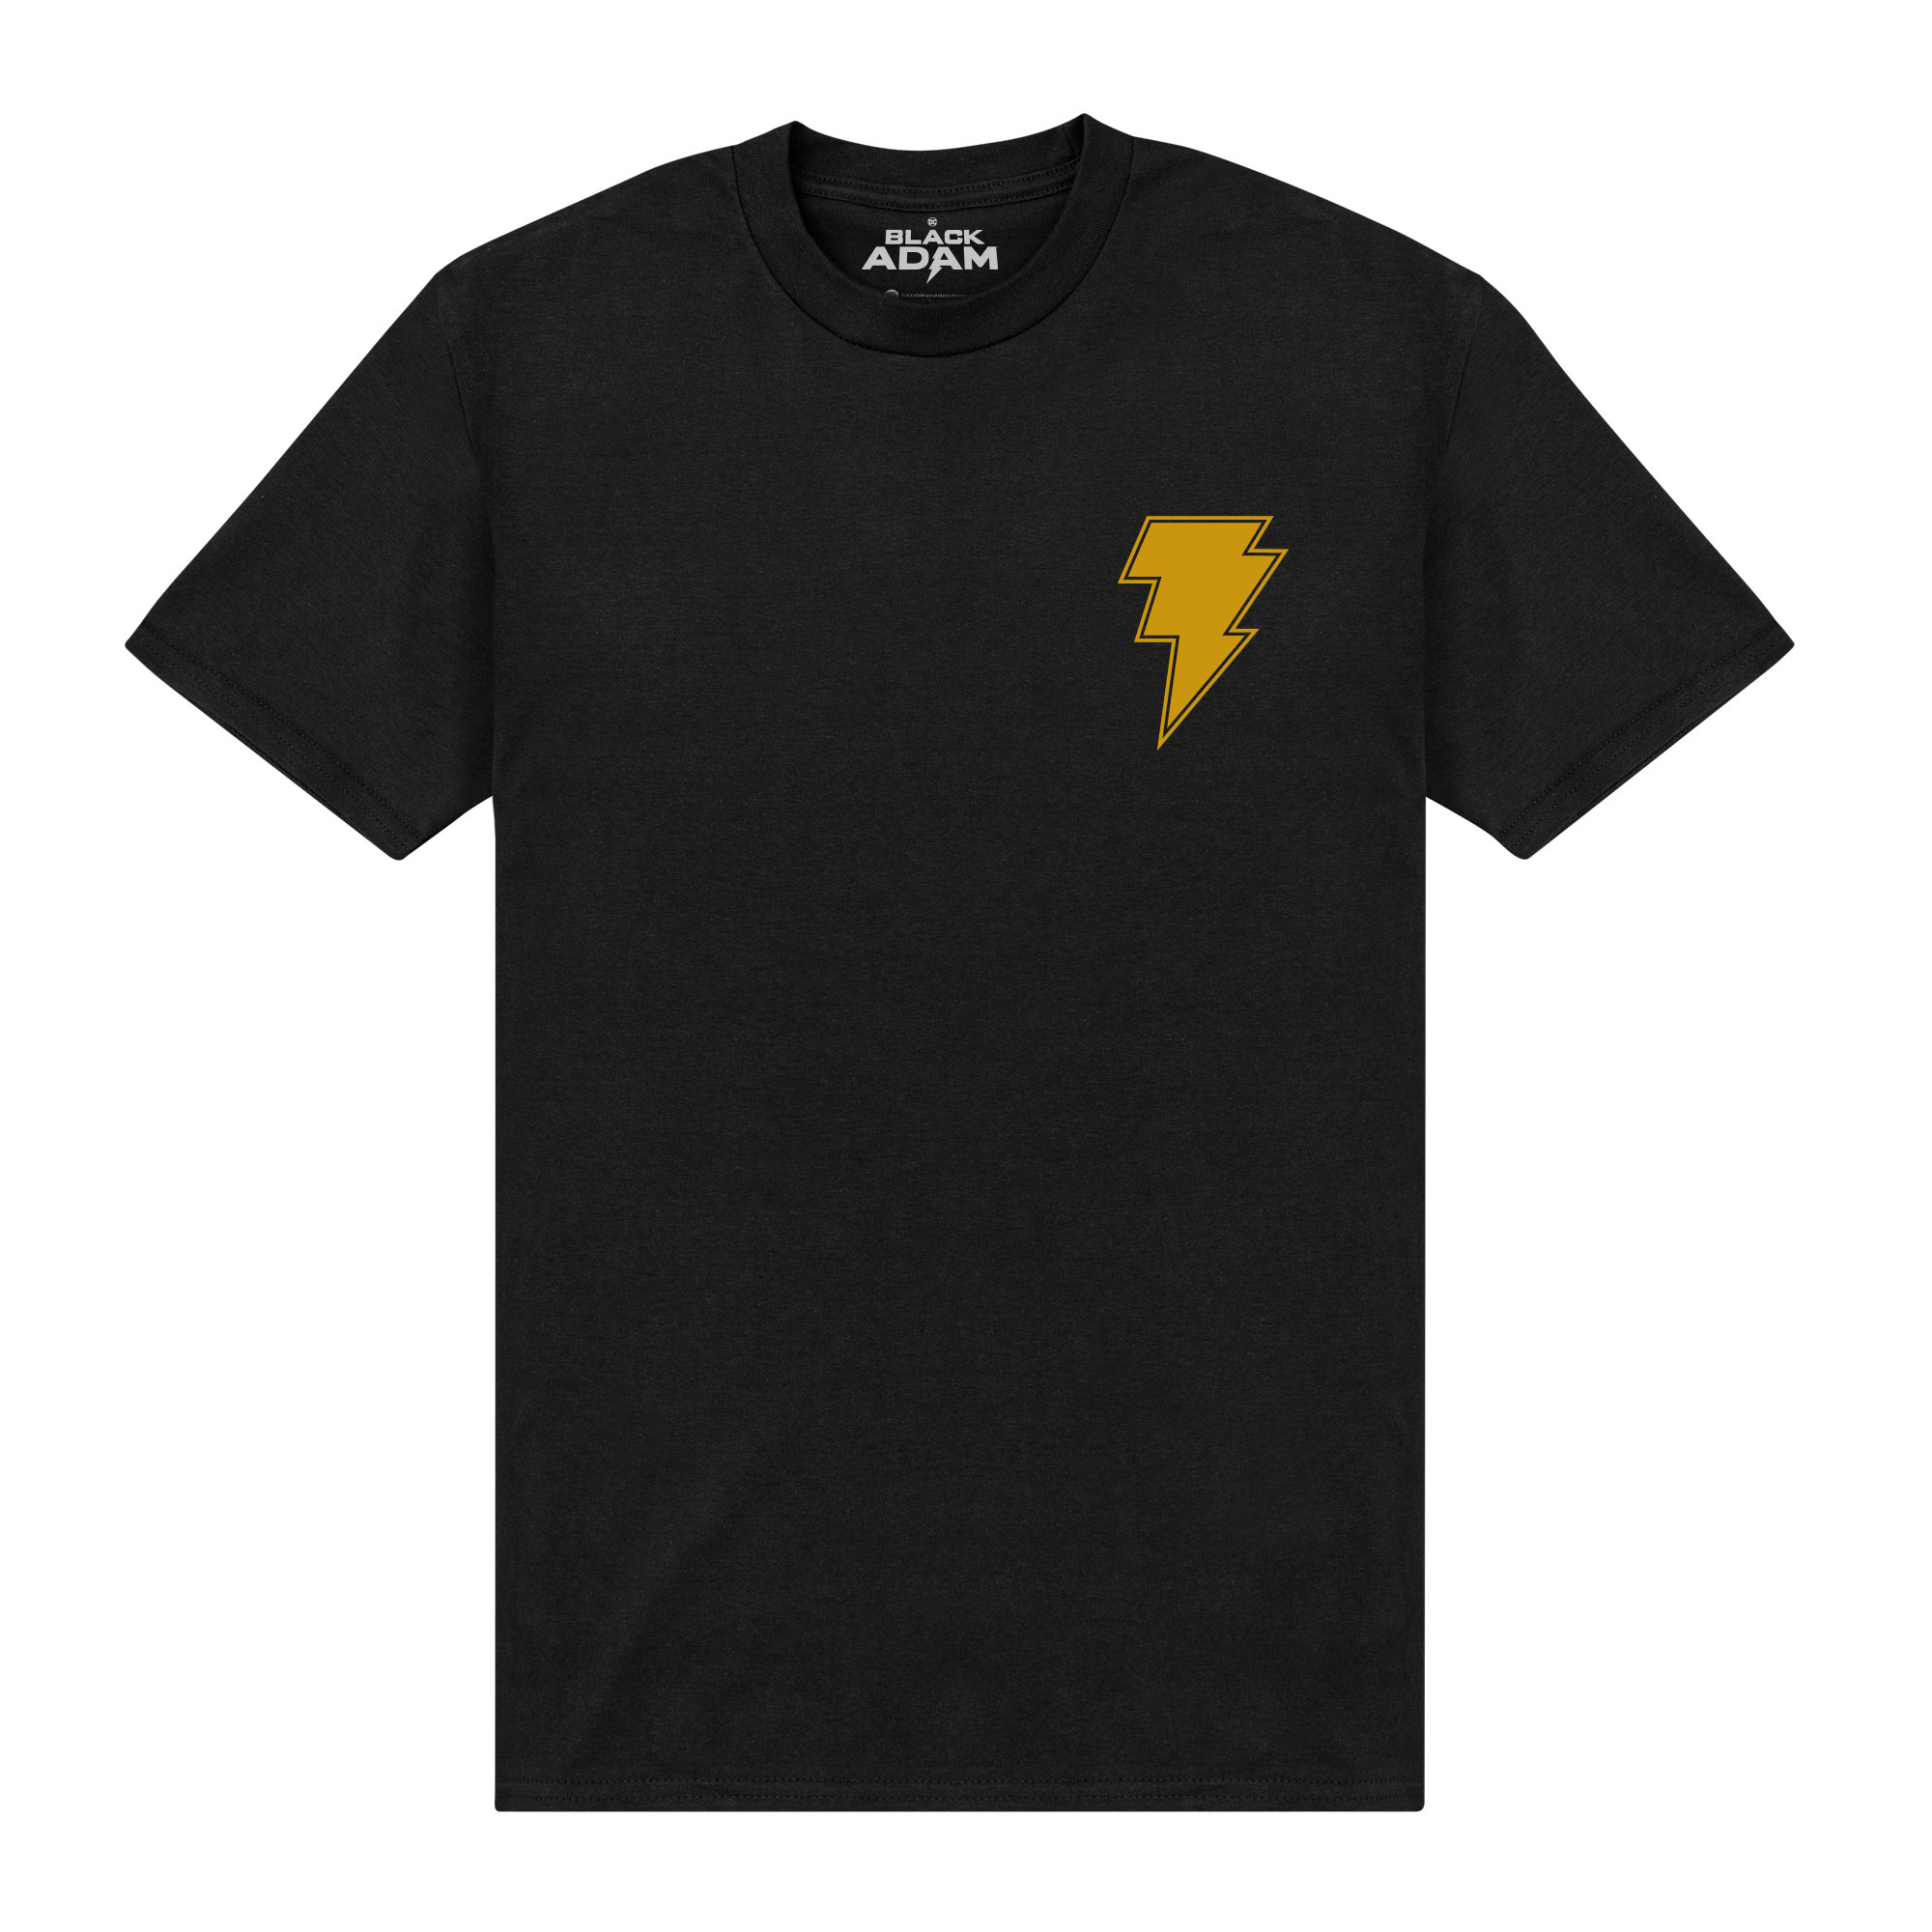 Official Black Adam T-Shirt Crew Neck Short Sleeve Graphic T Shirt Tee Top